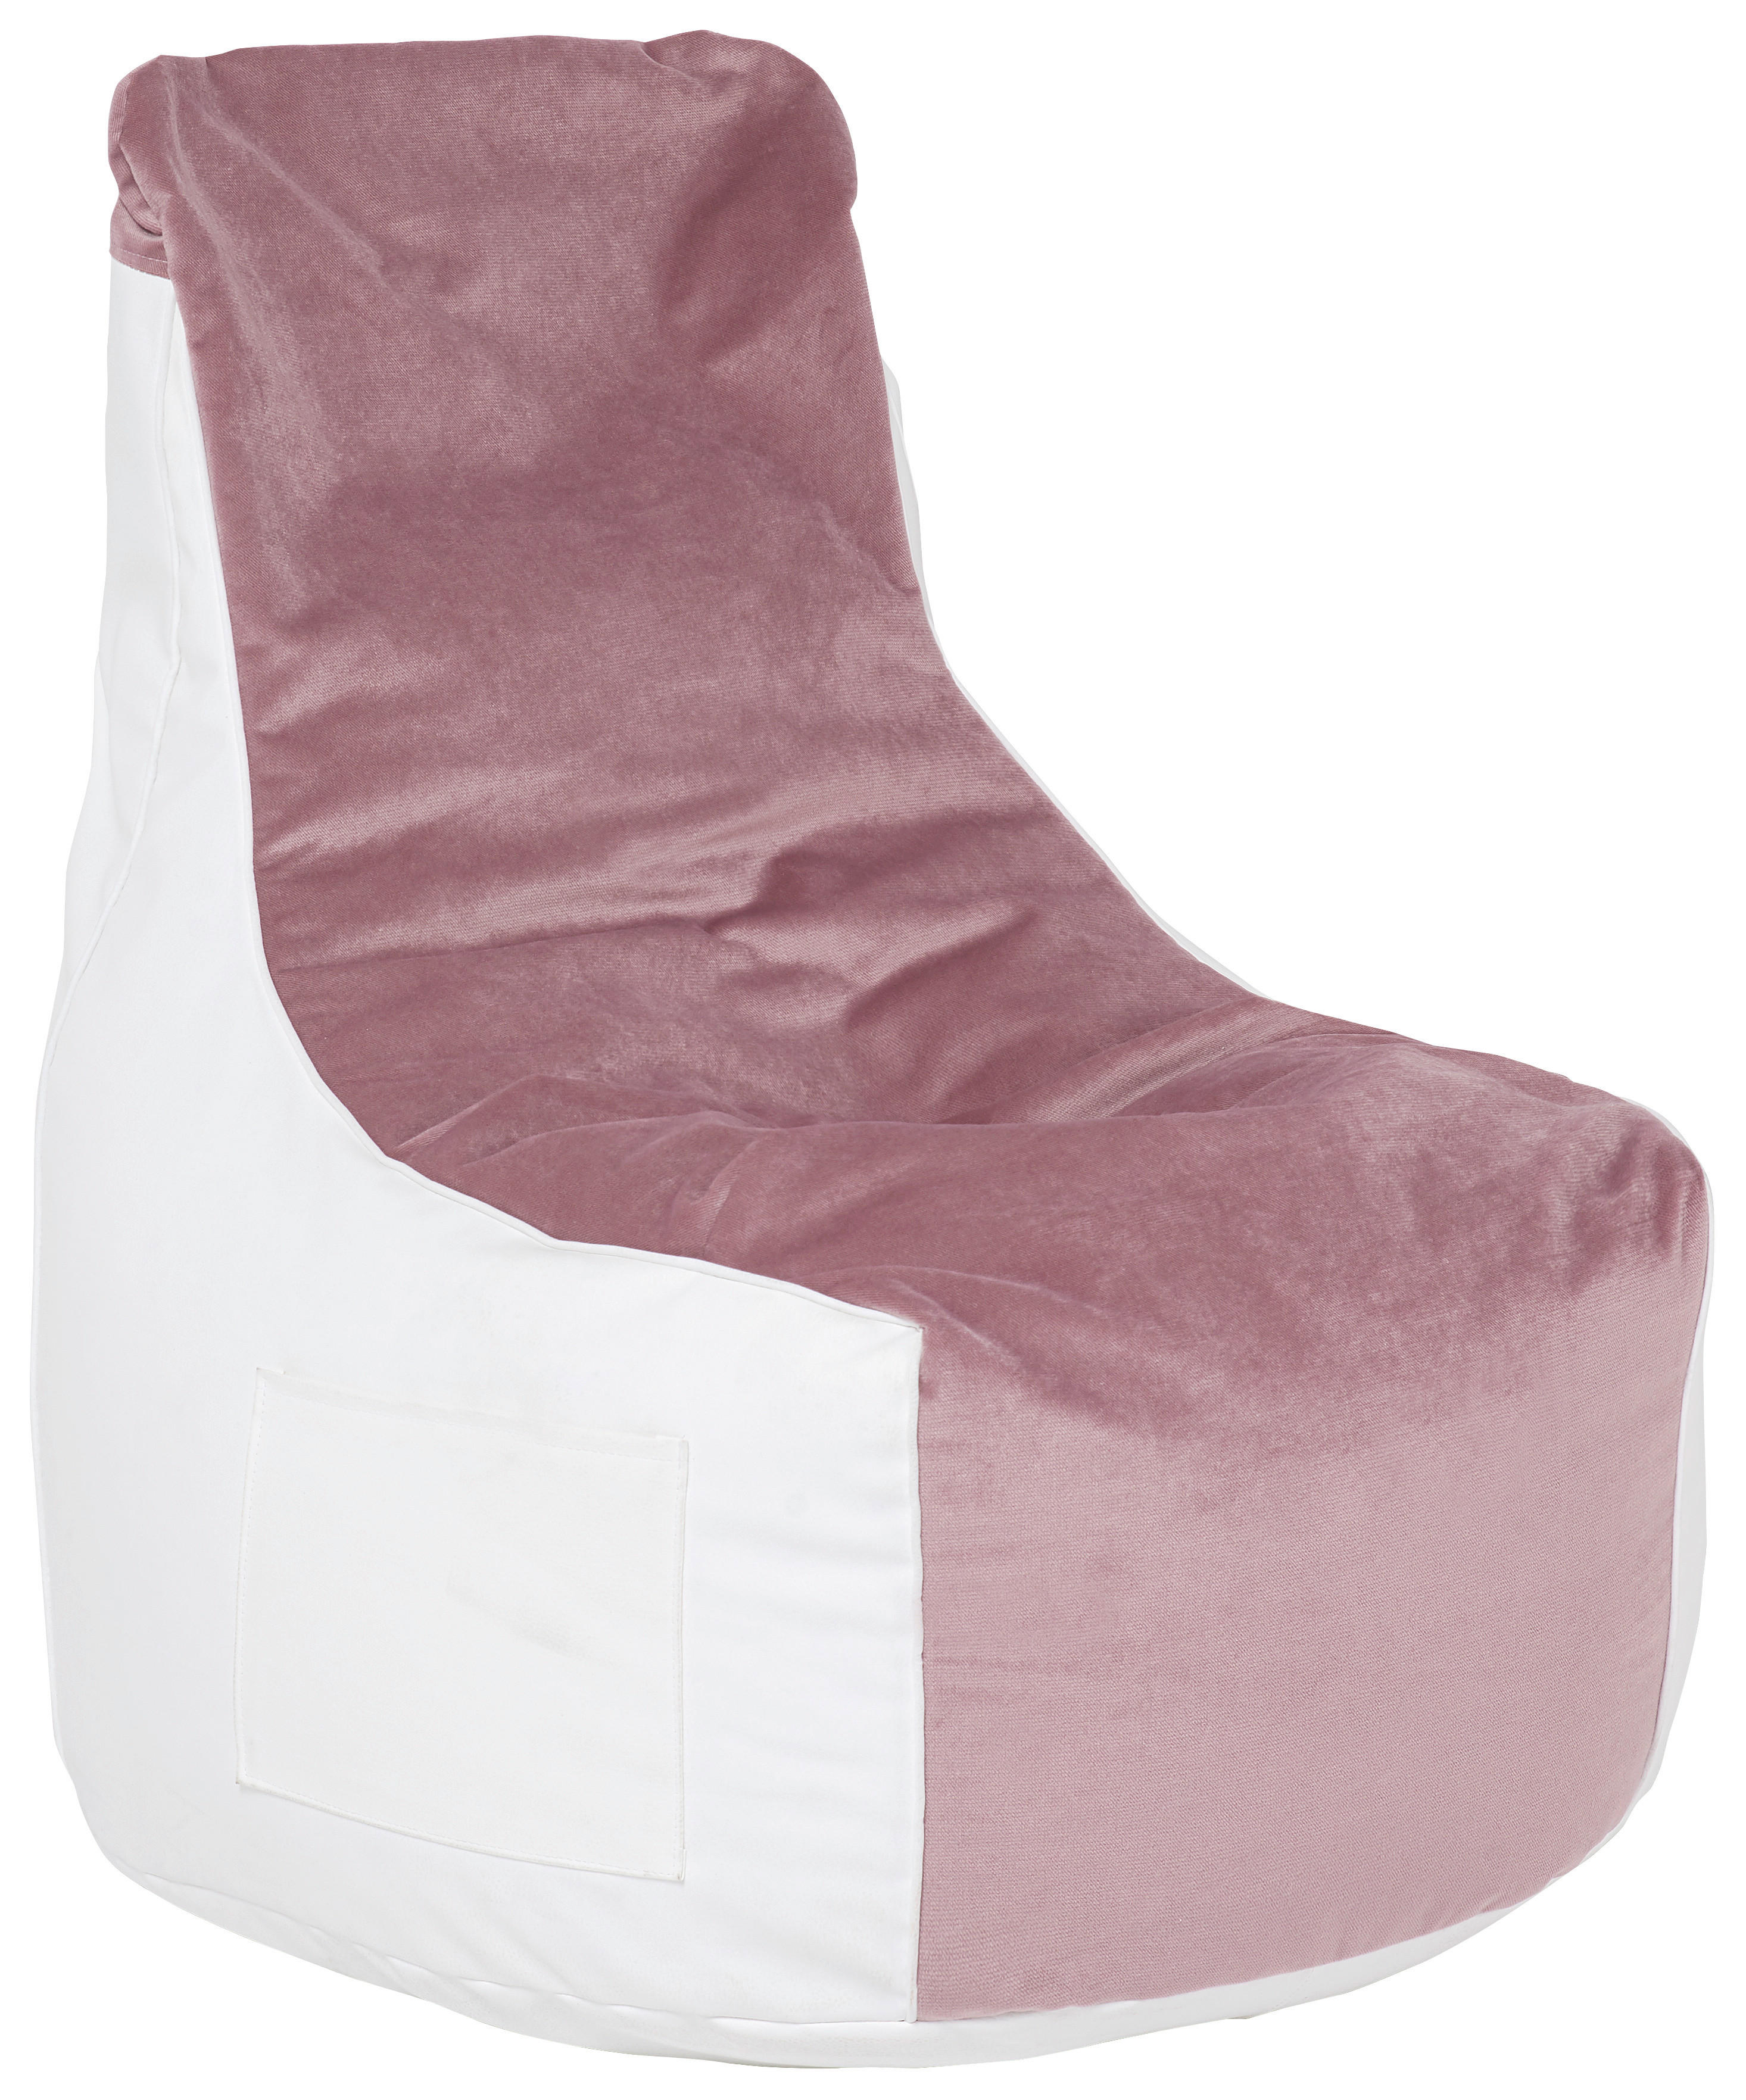 SEDACÍ PYTEL, bílá, světle růžová - bílá/světle růžová, Design, textil (65/75/95cm) - Boxxx